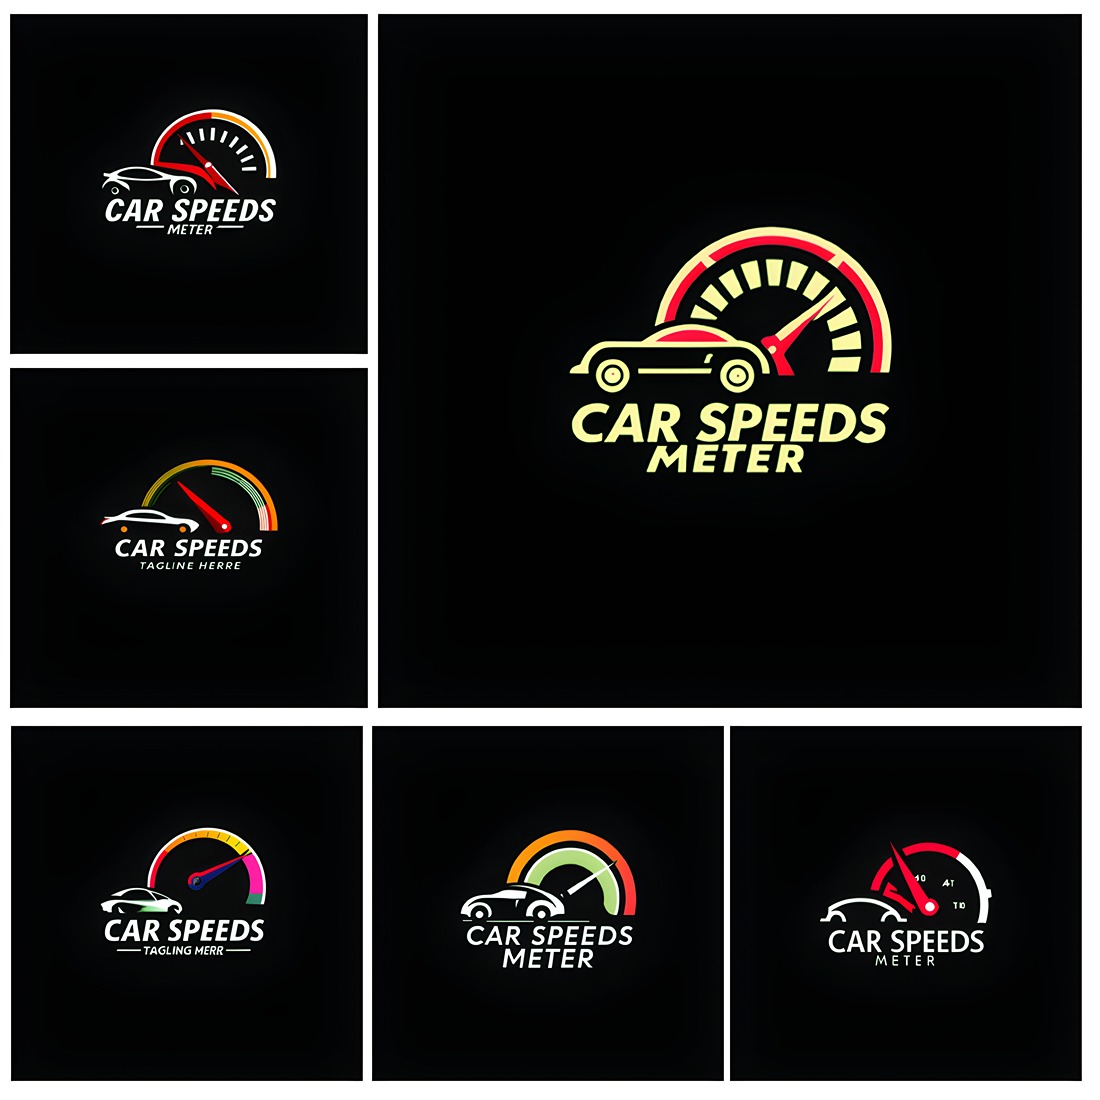 Car - Speeds Meter Logo Design Template, Car - Speeds Meter Vector Logo, Car - Speeds Meter Business Logo, Car - Speeds Meter Company Logo preview image.